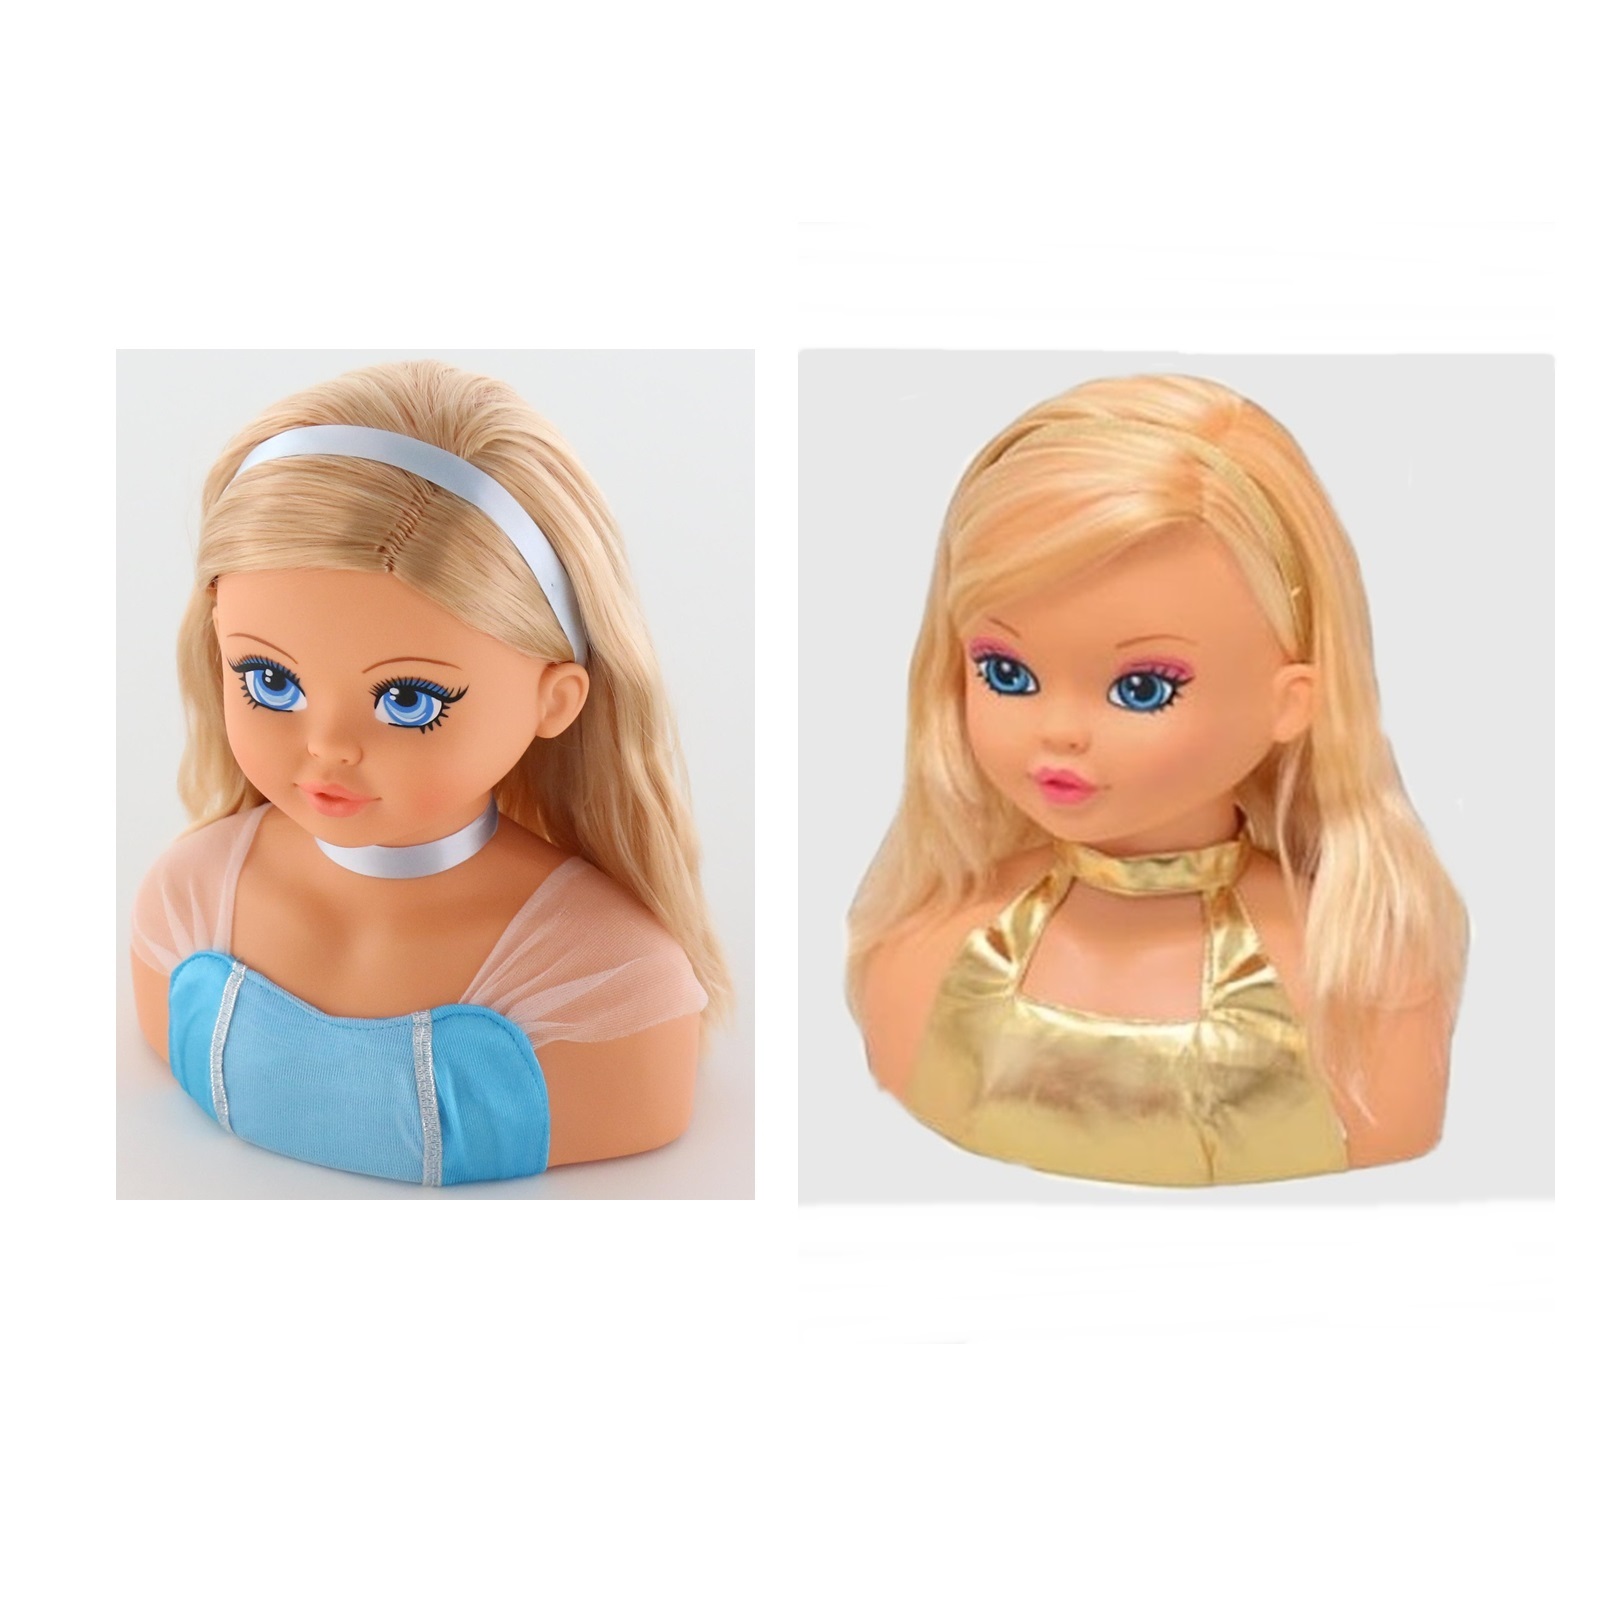 Манекен куклы для причесок и макияжа с аксессуарами 83267